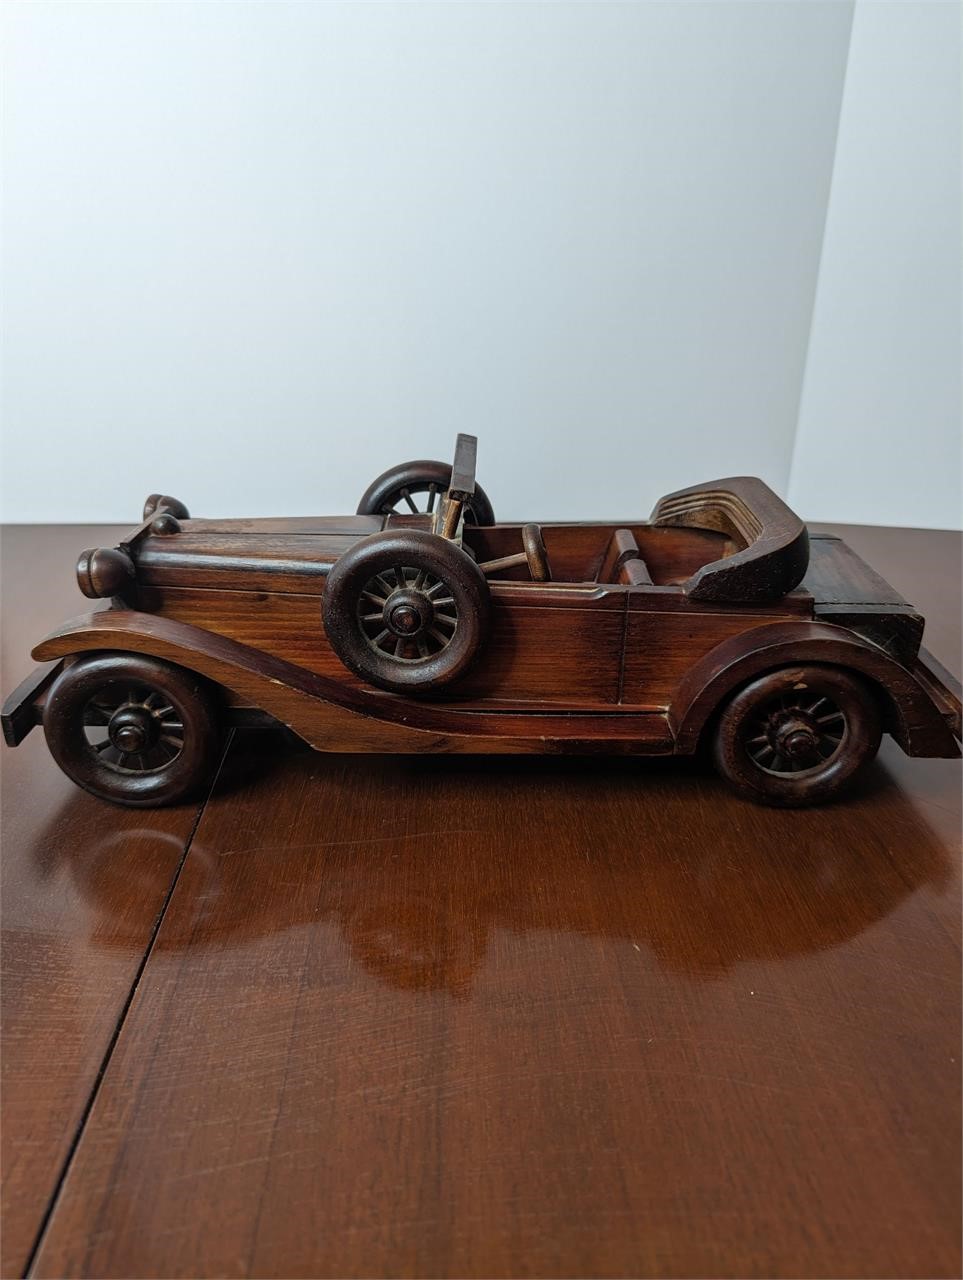 Wooden model T car